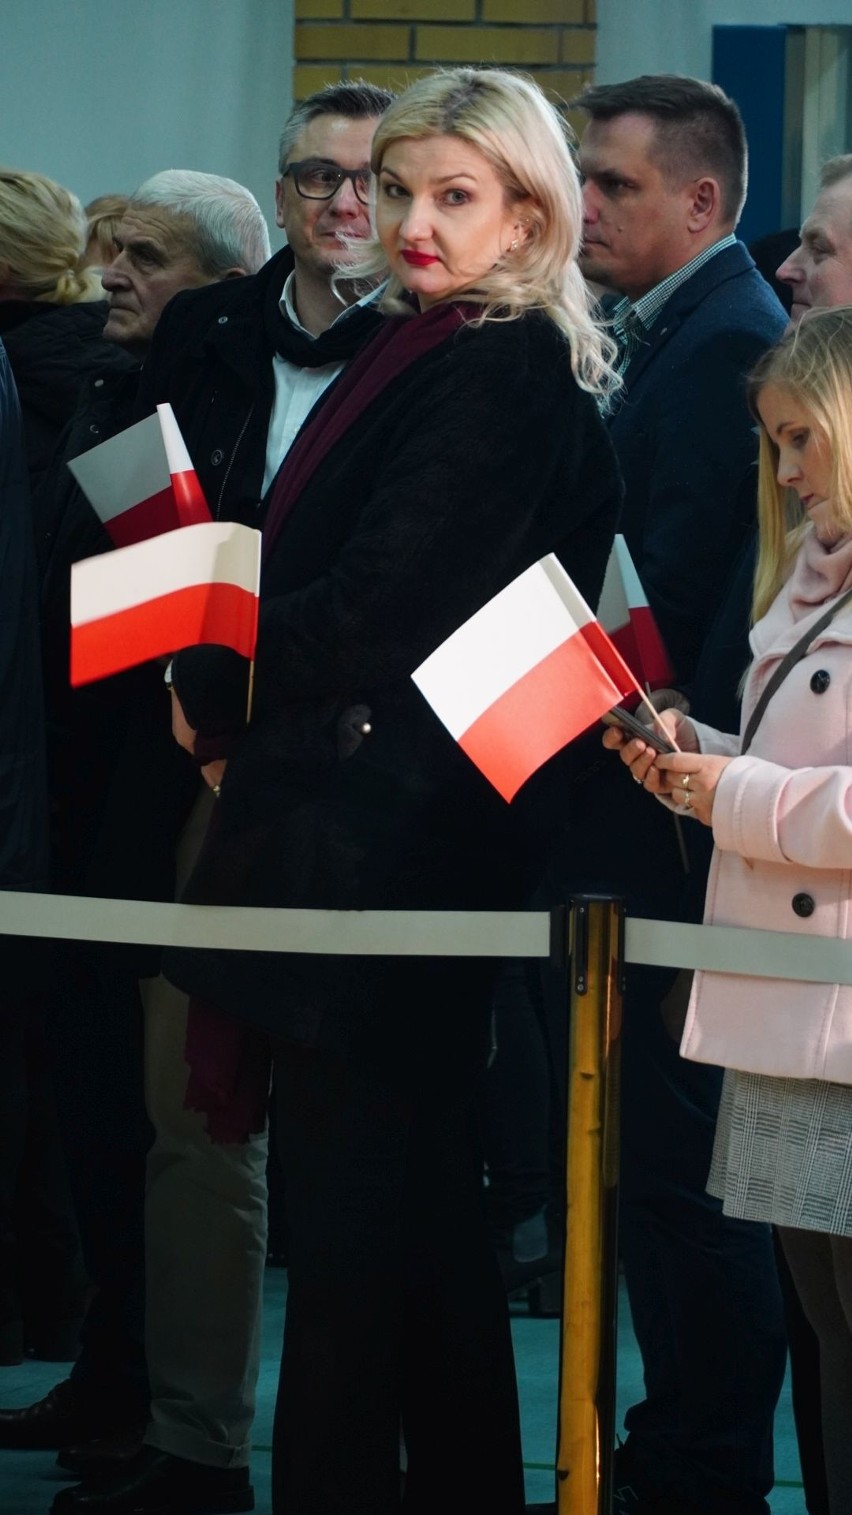 Prezydent Polski Andrzej Duda spotkał się z mieszkańcami...